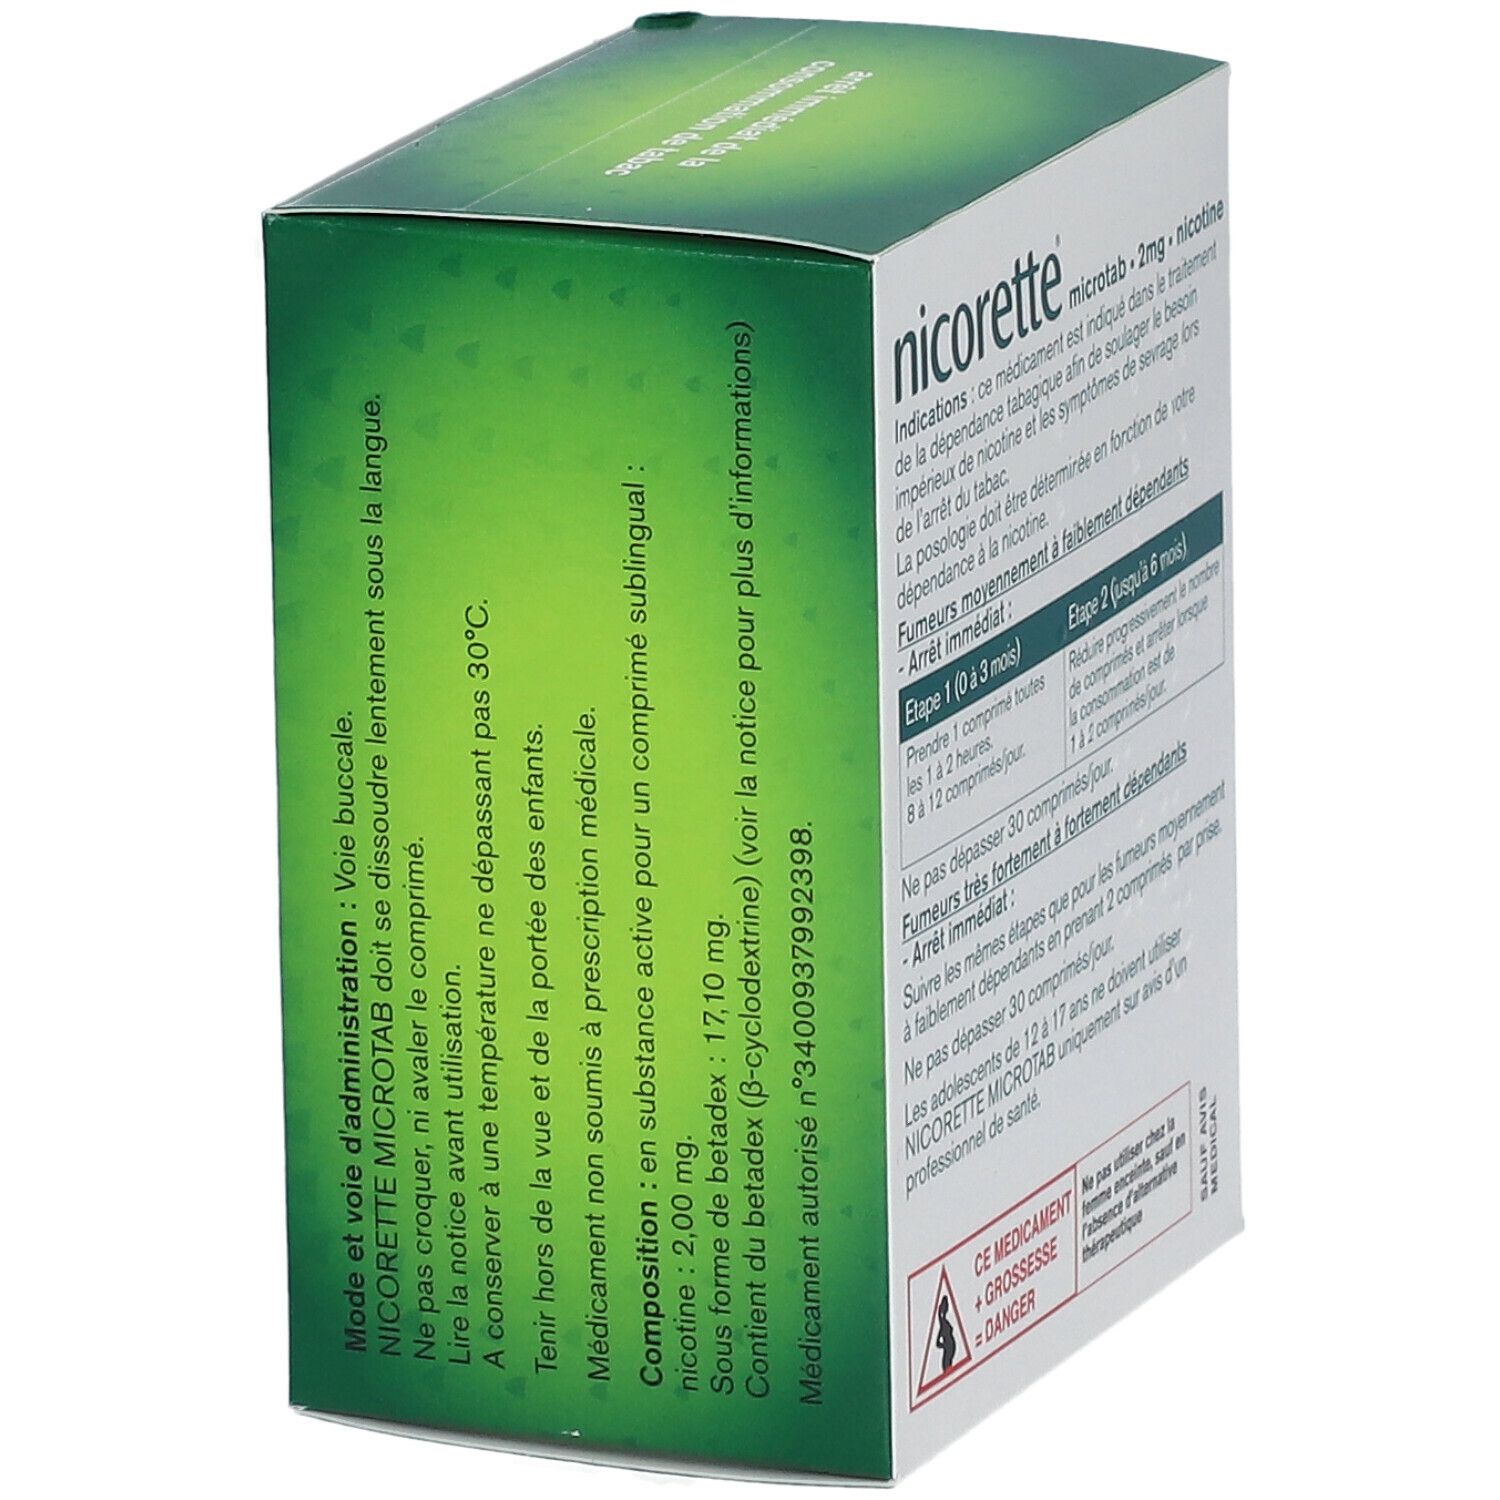 Nicorette® microtab 2 mg